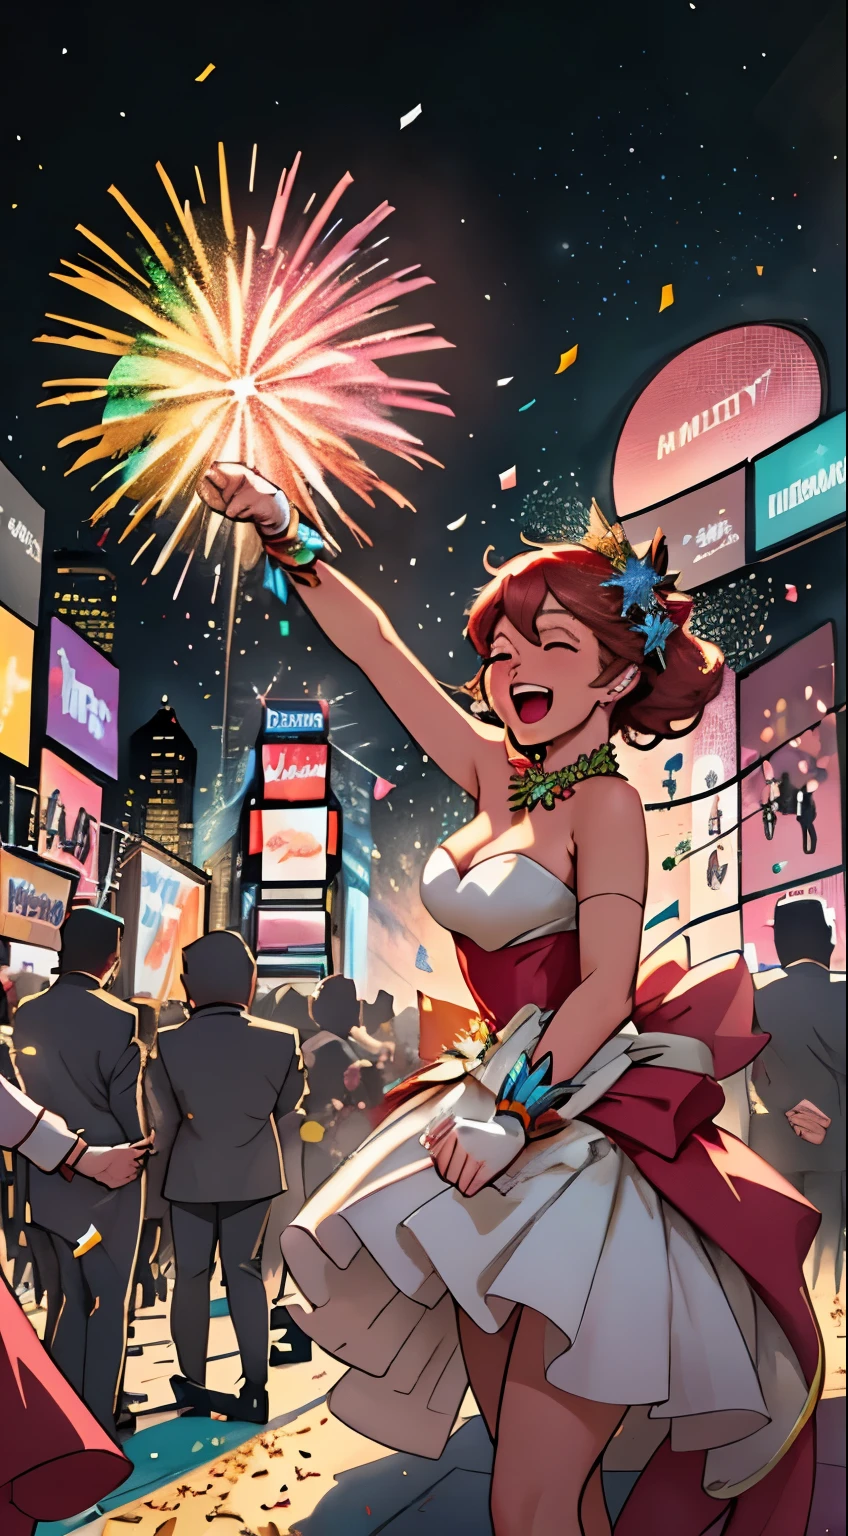 (Véspera de Ano Novo, Times Square),festive Atmosfera,celebração,Explosão de fogos de artifício, multidão animada, saúde and laughter, confete colorido, luzes vibrantes,[espumante] enfeites, música alegre, [Excitante] antecipação, energia vibrante, [deslumbrante] Show de luzes, [espetacular] Show de fogos de artifício, [relógio de contagem regressiva], [Alto astral] foliões, [estelar] apresentações, [elaborar] decorações, [alegre] dançando, [Magnífico] Horizonte, [emocionante] momentos, [inesquecível] recordações, [Energético] foliões, [Glamouroso] roupas, [extasiado] celebraçãos, [unificado] saúde, [espetacular] queda de bola, [inacreditável] chuveiro de confete, [exuberant] Atmosfera, [Estourando] cânones de confete, [trovejante] Aplausos, [encantador] céu noturno, [inesquecível] experiência